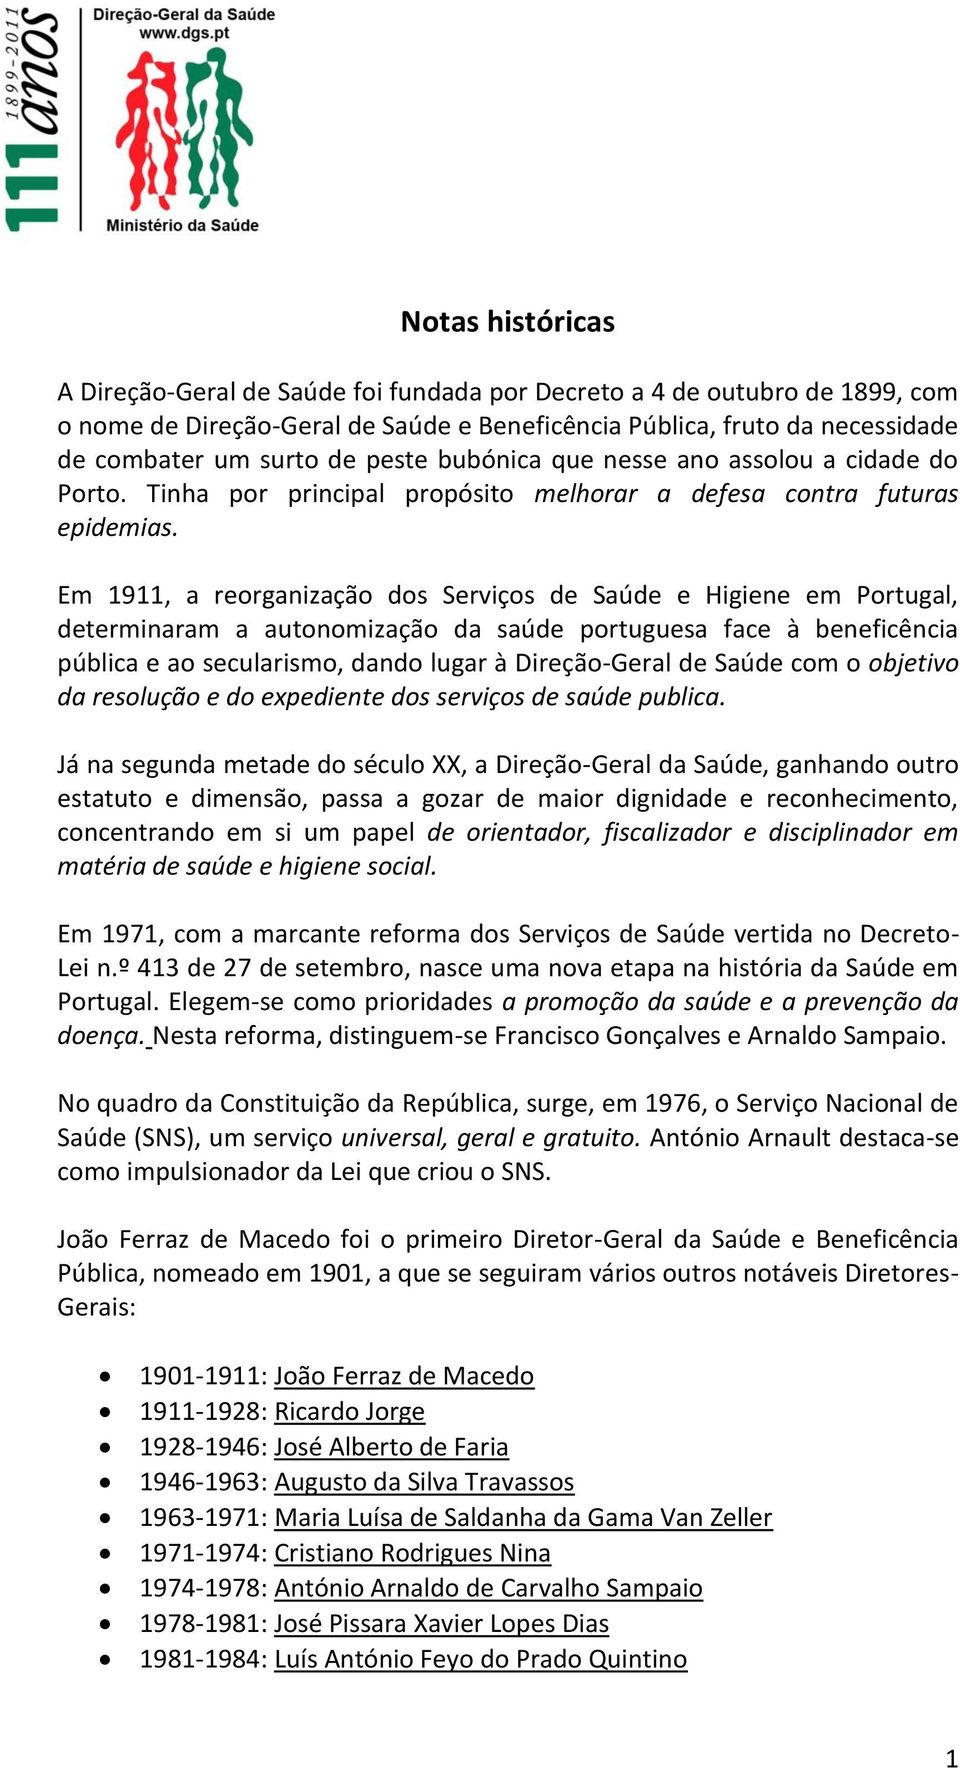 Em 1911, a reorganização dos Serviços de Saúde e Higiene em Portugal, determinaram a autonomização da saúde portuguesa face à beneficência pública e ao secularismo, dando lugar à Direção-Geral de